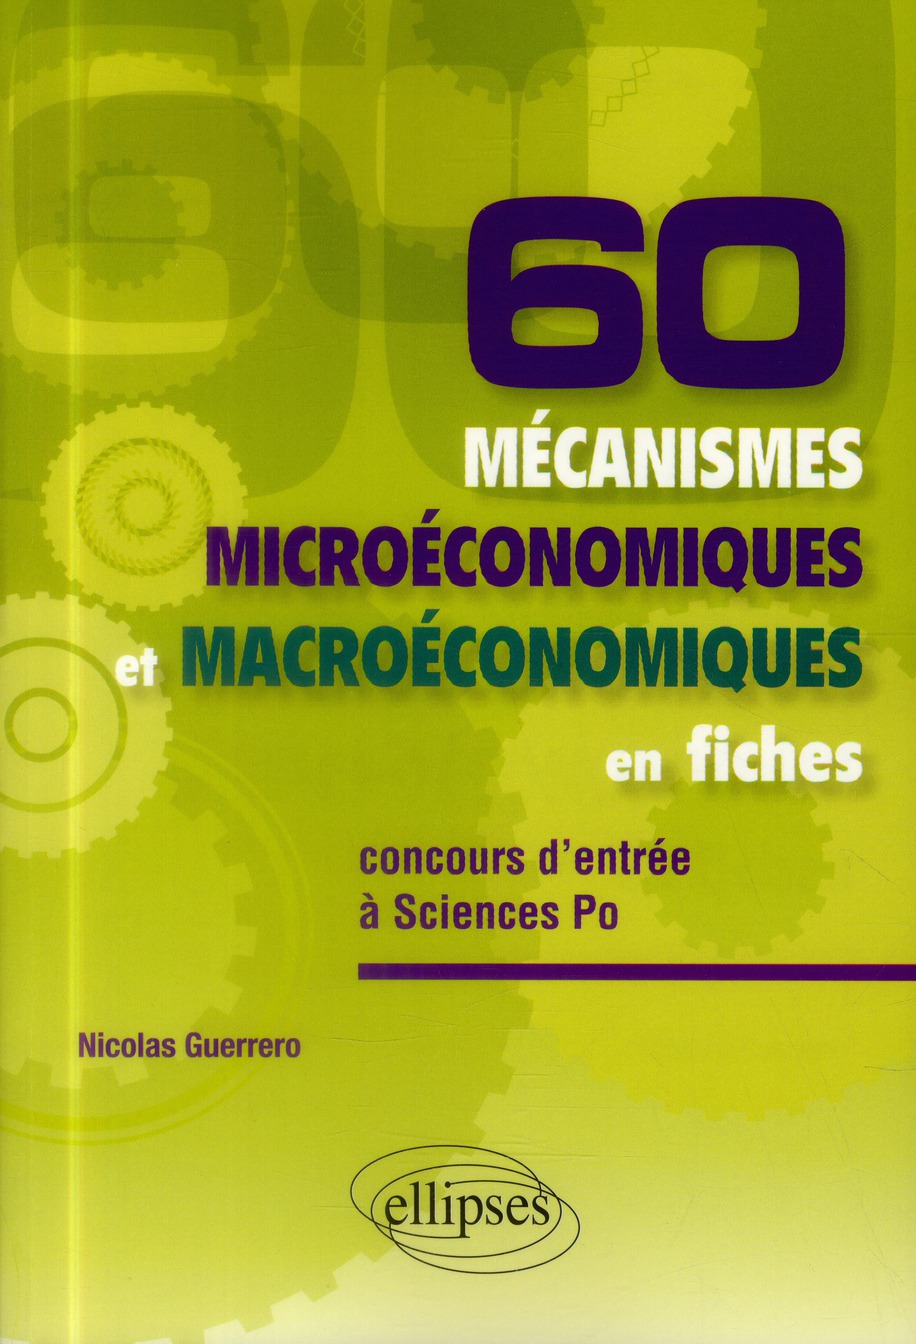 60 MECANISMES MICROECONOMIQUES ET MACROECONOMIQUES EN FICHESA ASPECIAL CONCOURS D ENTREE A SCIENCES